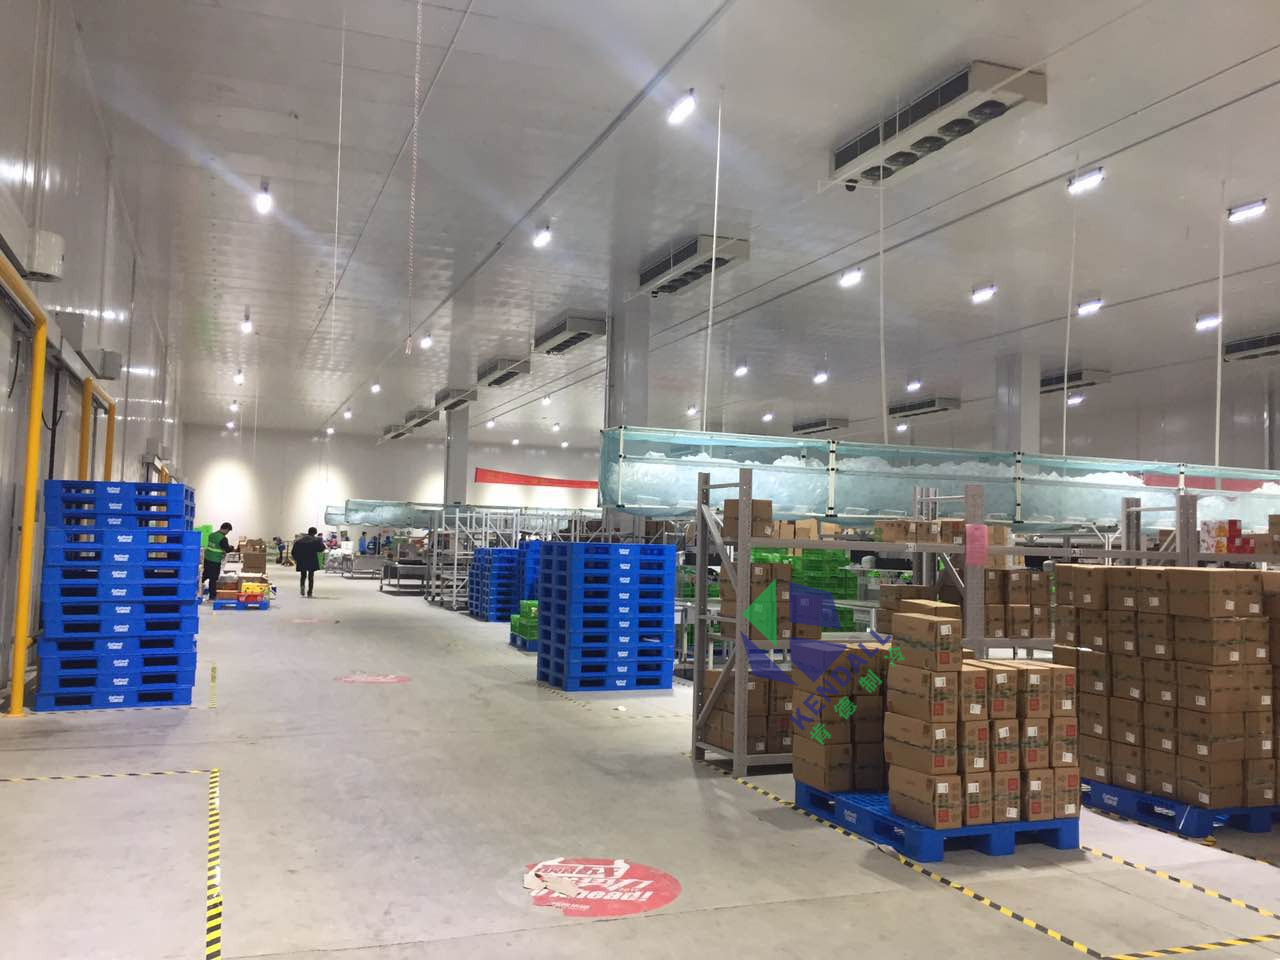 南京巨凱供應鏈管理有限公司12500平方米冷庫